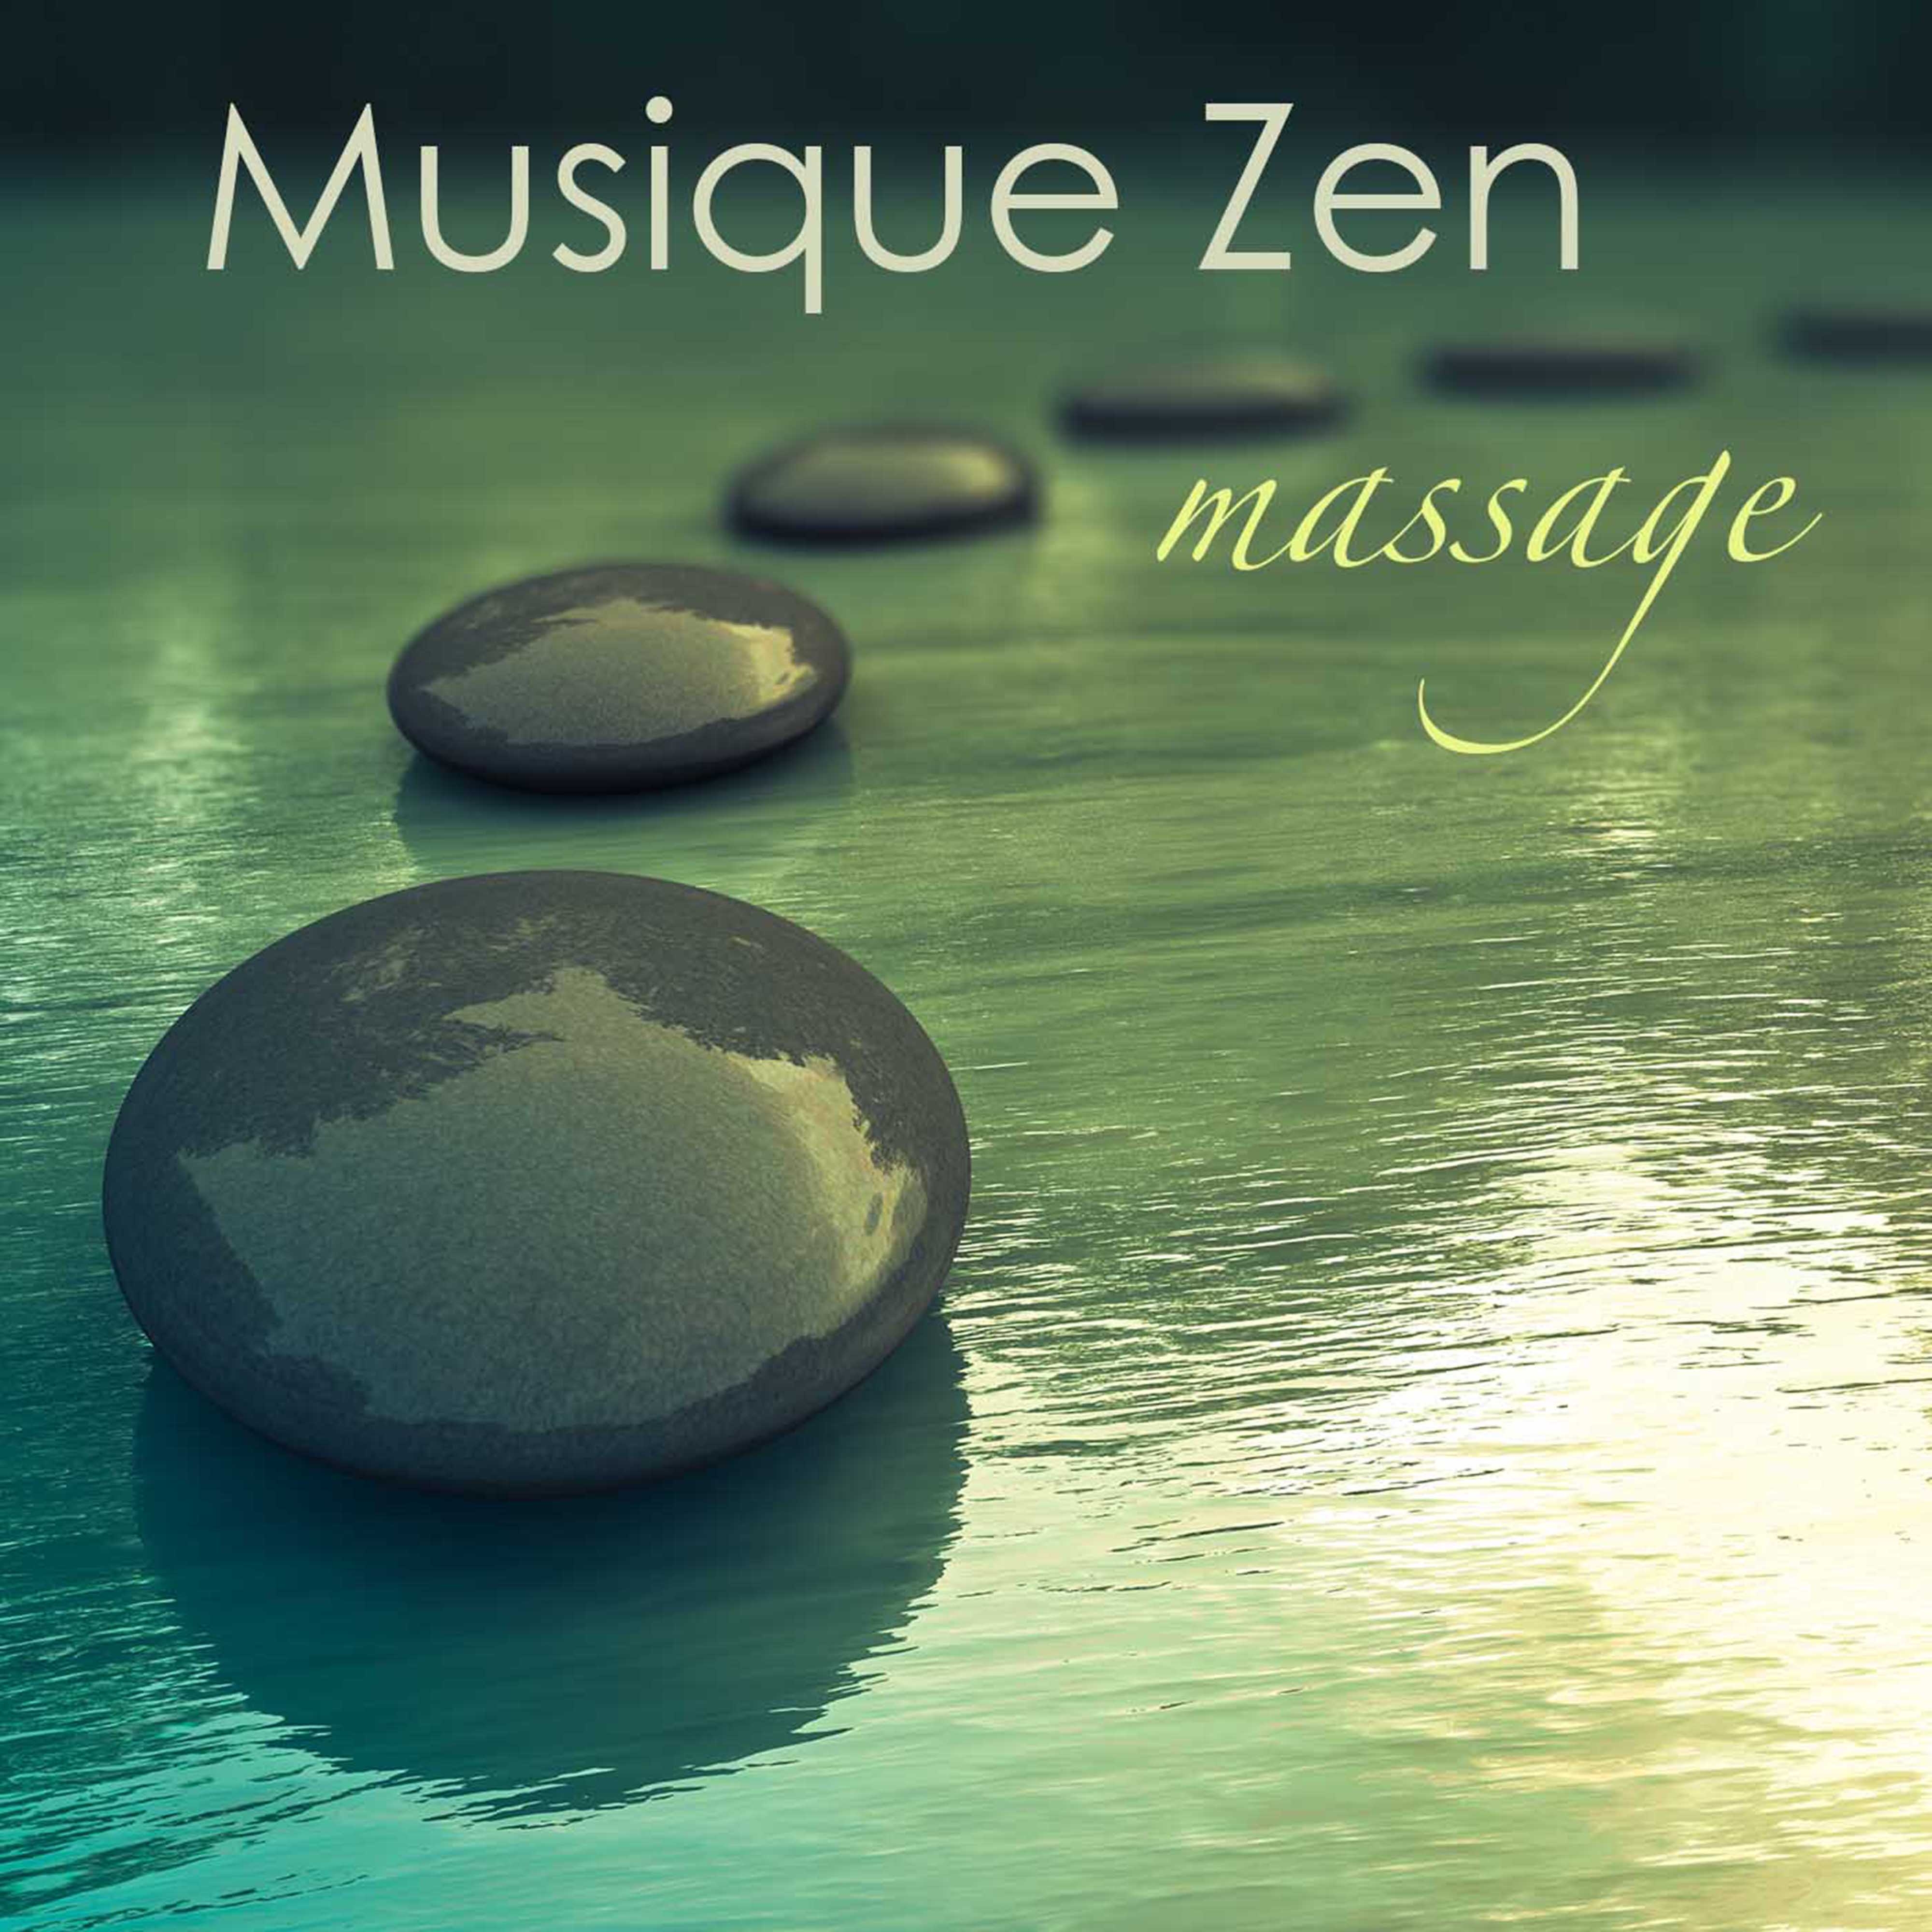 Musique zen massage: Musique de fond pour harmonie, sérénité et bien-être, musique relaxante pour le massage et relax